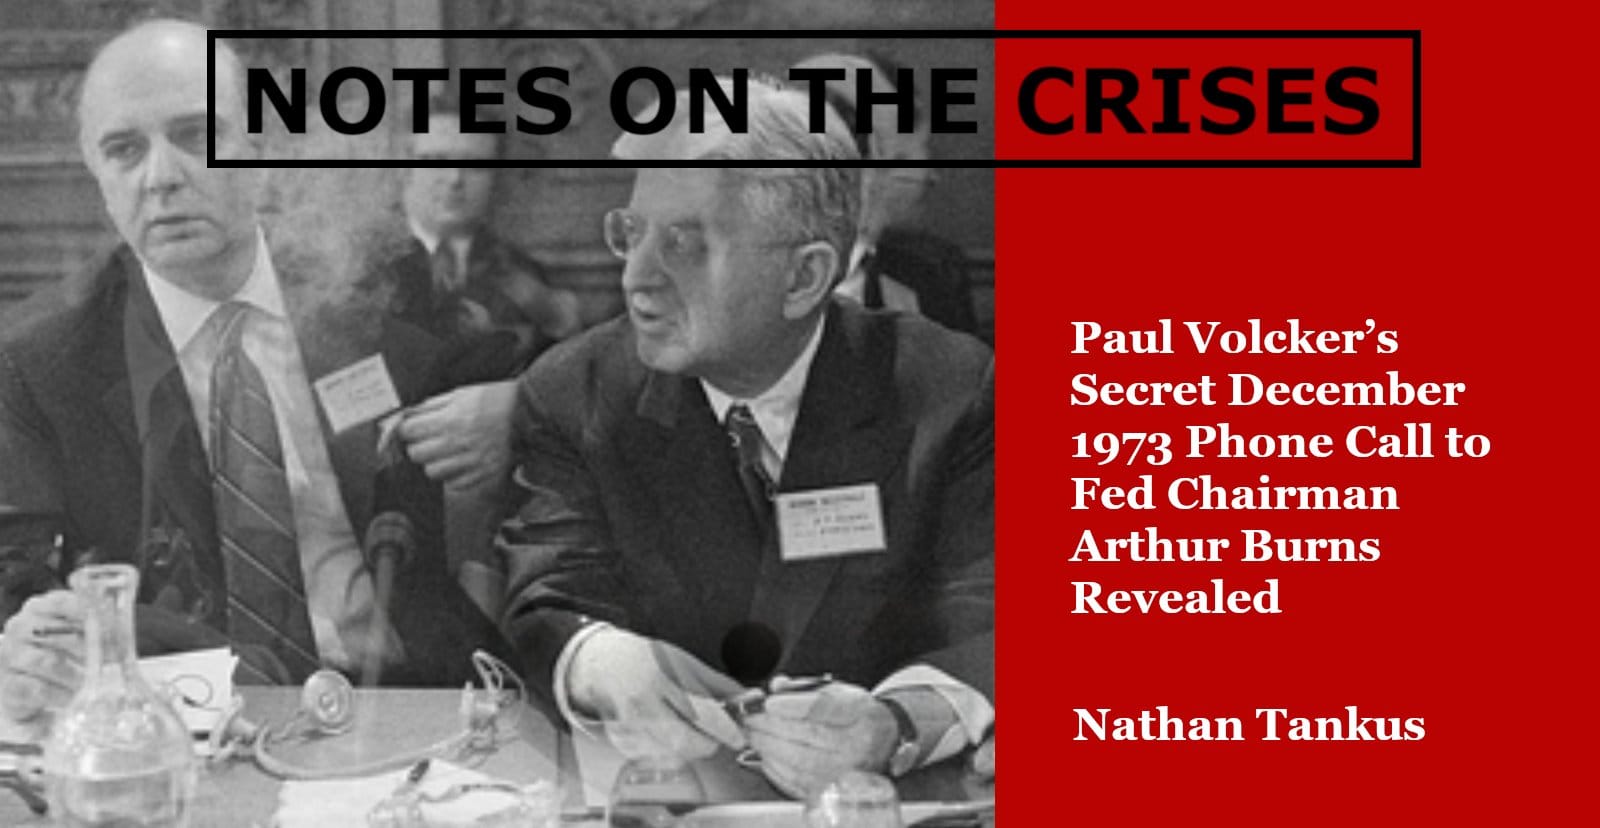 Paul Volcker’s Secret December 1973 Phone Call to Fed Chairman Arthur Burns Revealed